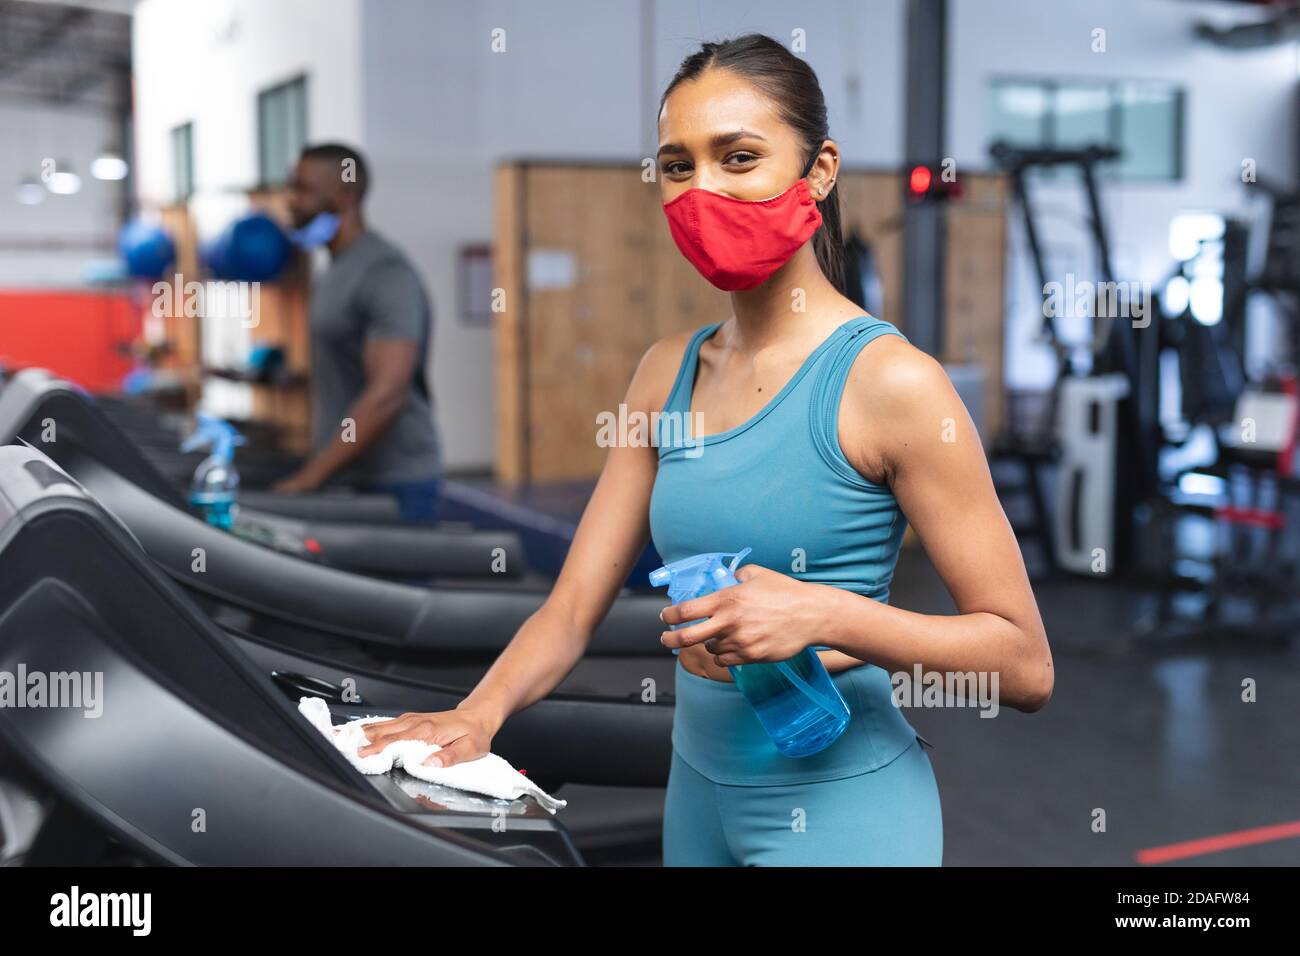 Porträt von fit kaukasischen Frau trägt Gesichtsmaske desinfizieren Herz Maschine vor dem Ausarbeiten in Th Stockfoto